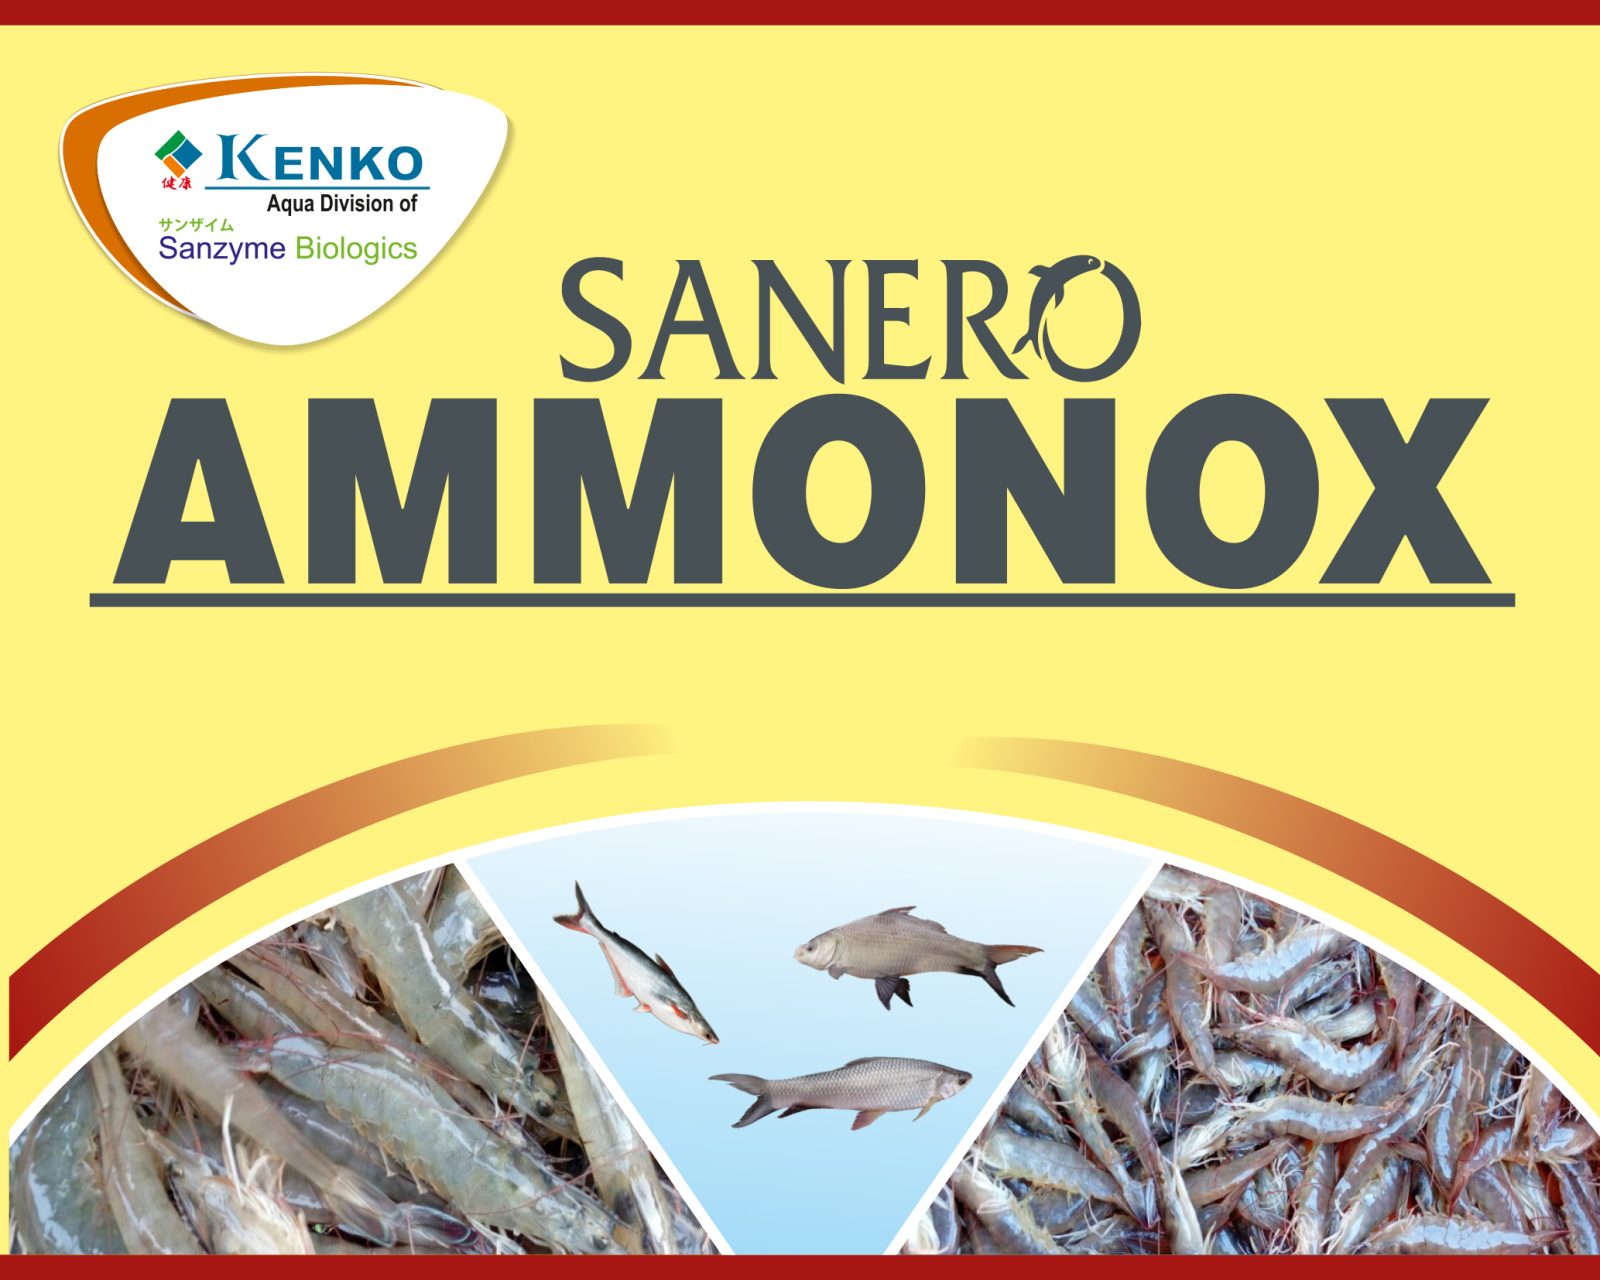 Sanero Ammonox